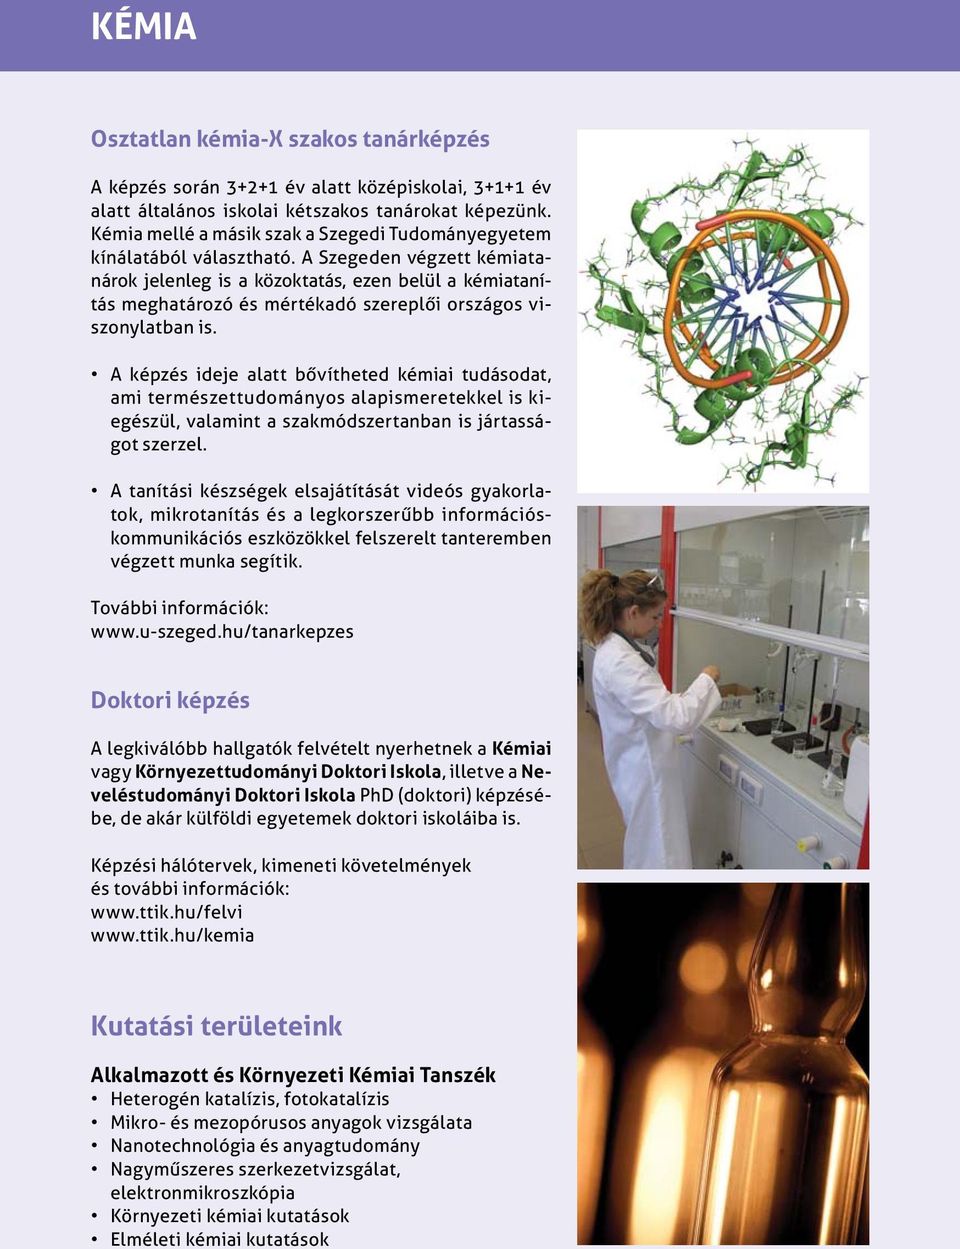 A Szegeden végzett kémiatanárok jelenleg is a közoktatás, ezen belül a kémiatanítás meghatározó és mértékadó szereplői országos viszonylatban is.